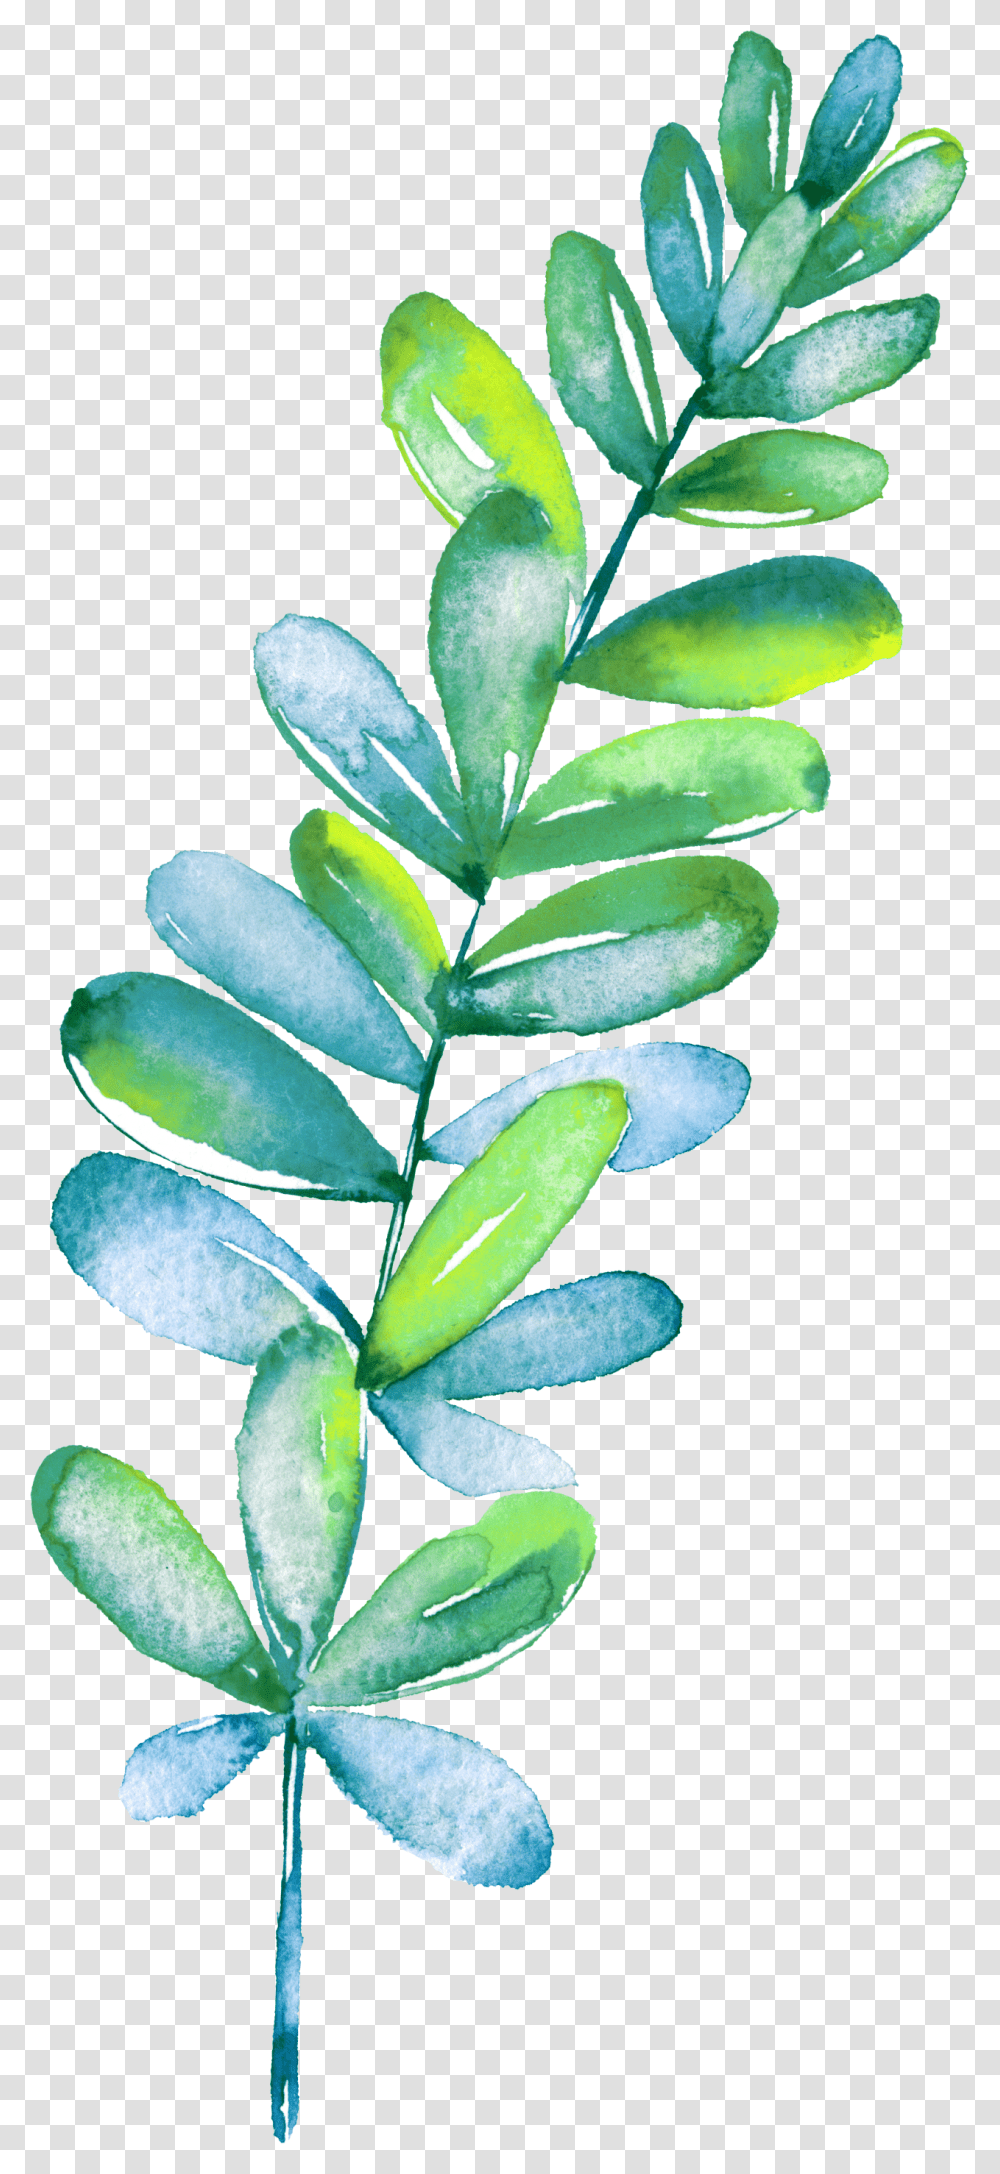 Leaf, Plant, Flower, Petal Transparent Png